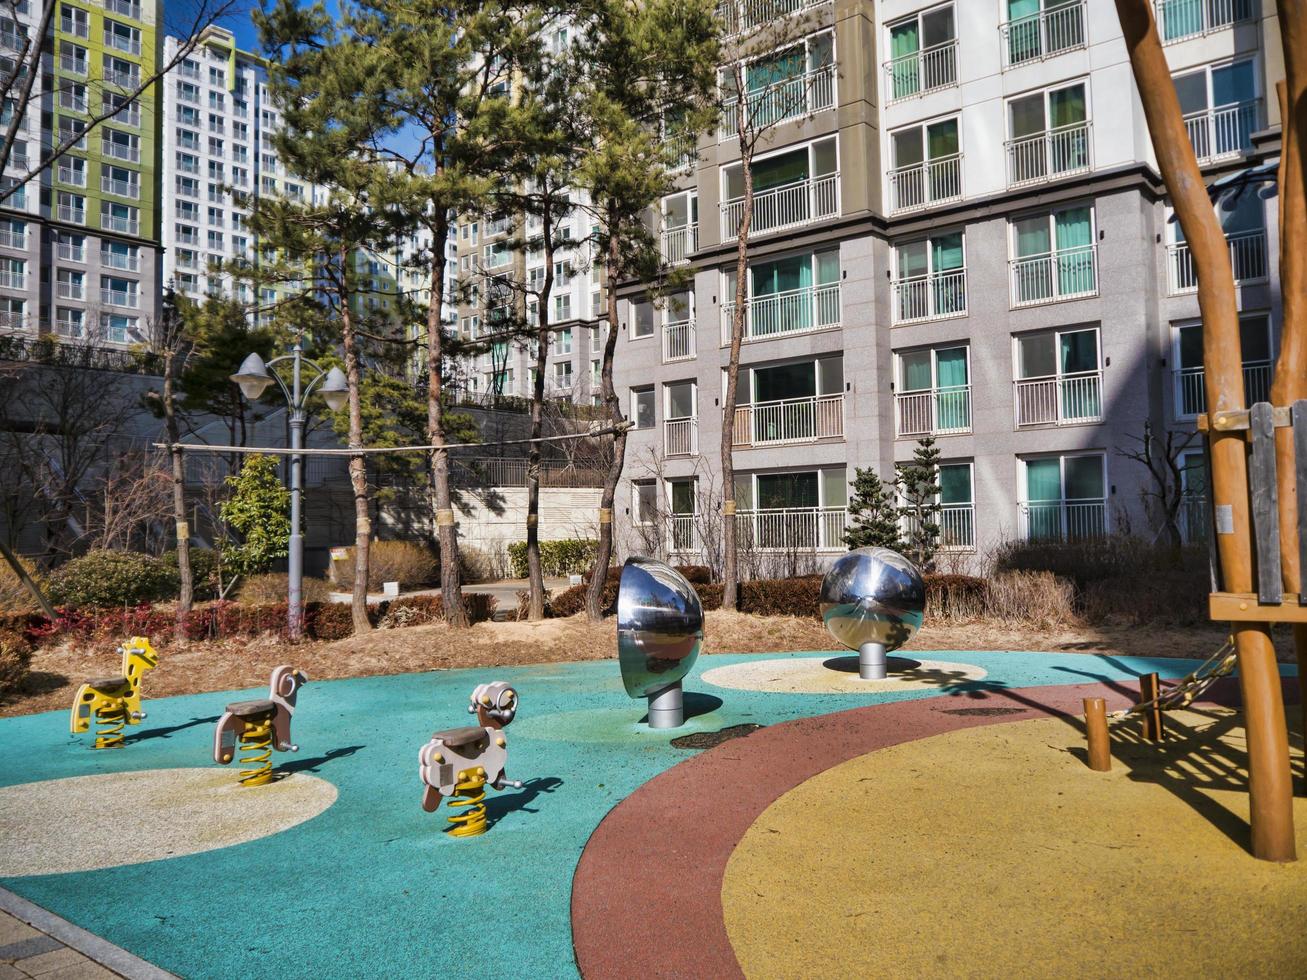 el patio de recreo para niños y grandes edificios en una zona rica de la ciudad de yeosu. Corea del Sur foto